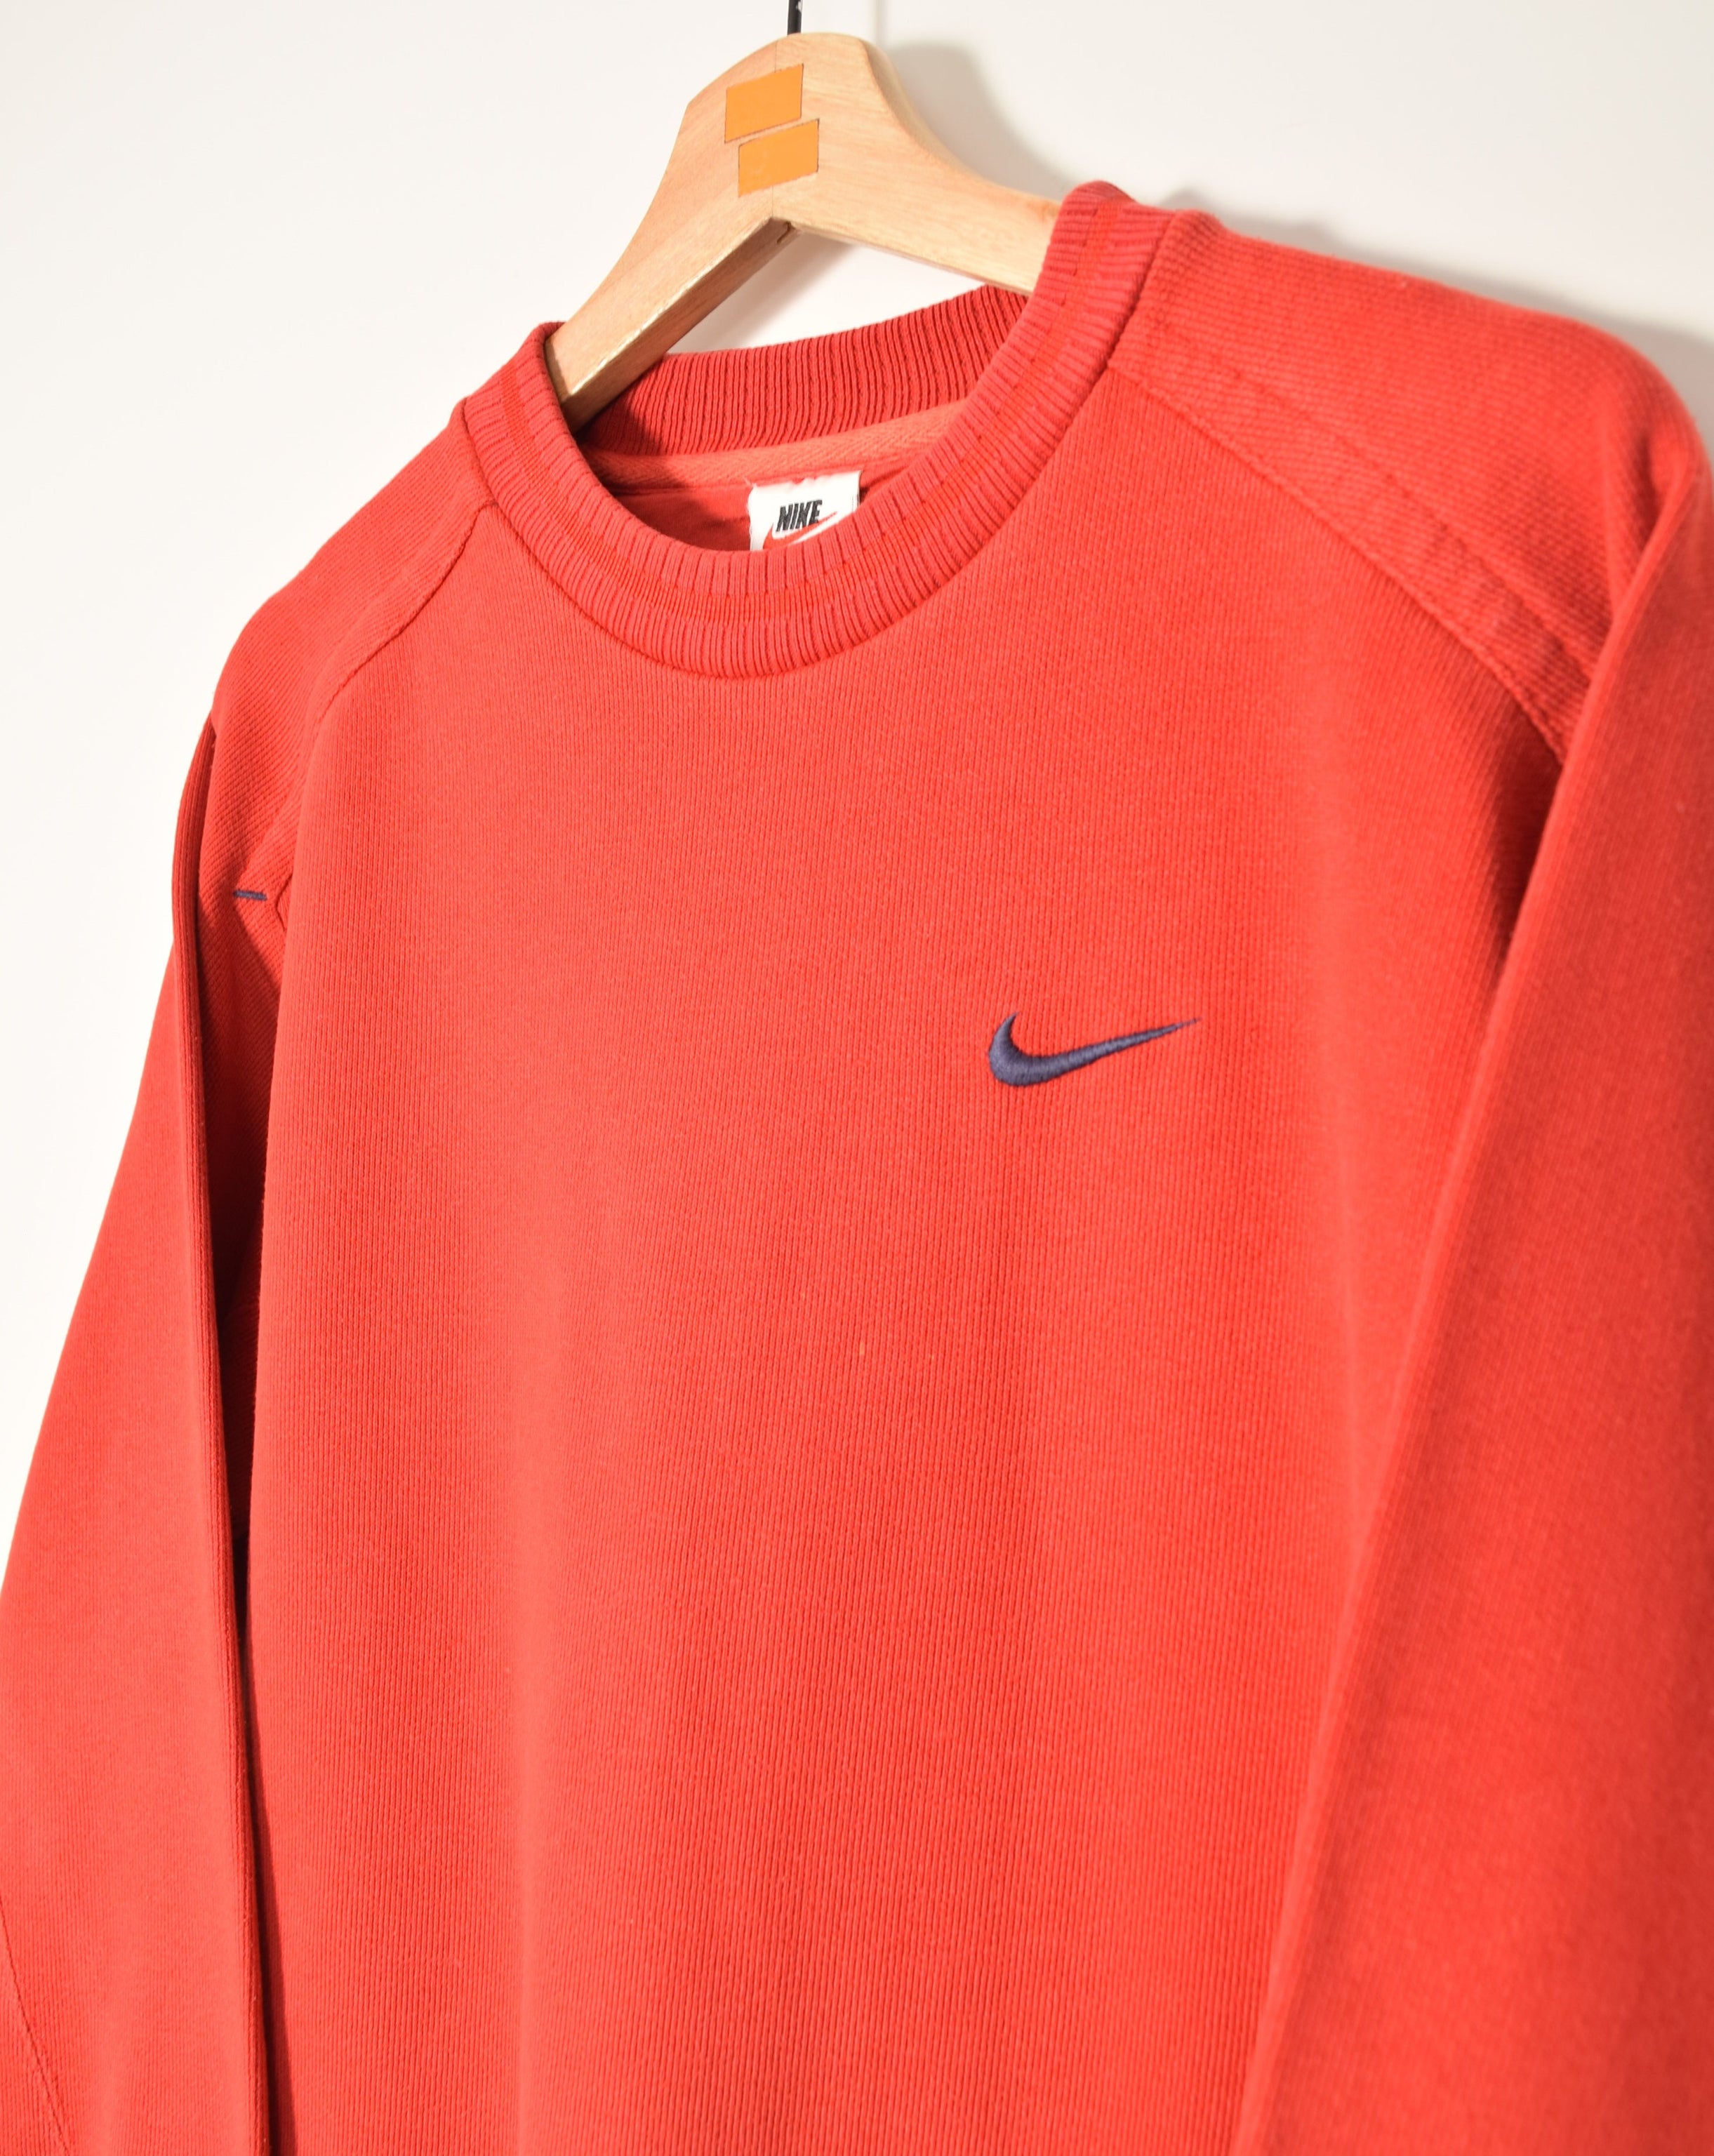 Nike Vintage Sweatshirt (S) – FROM THE VINTAGE